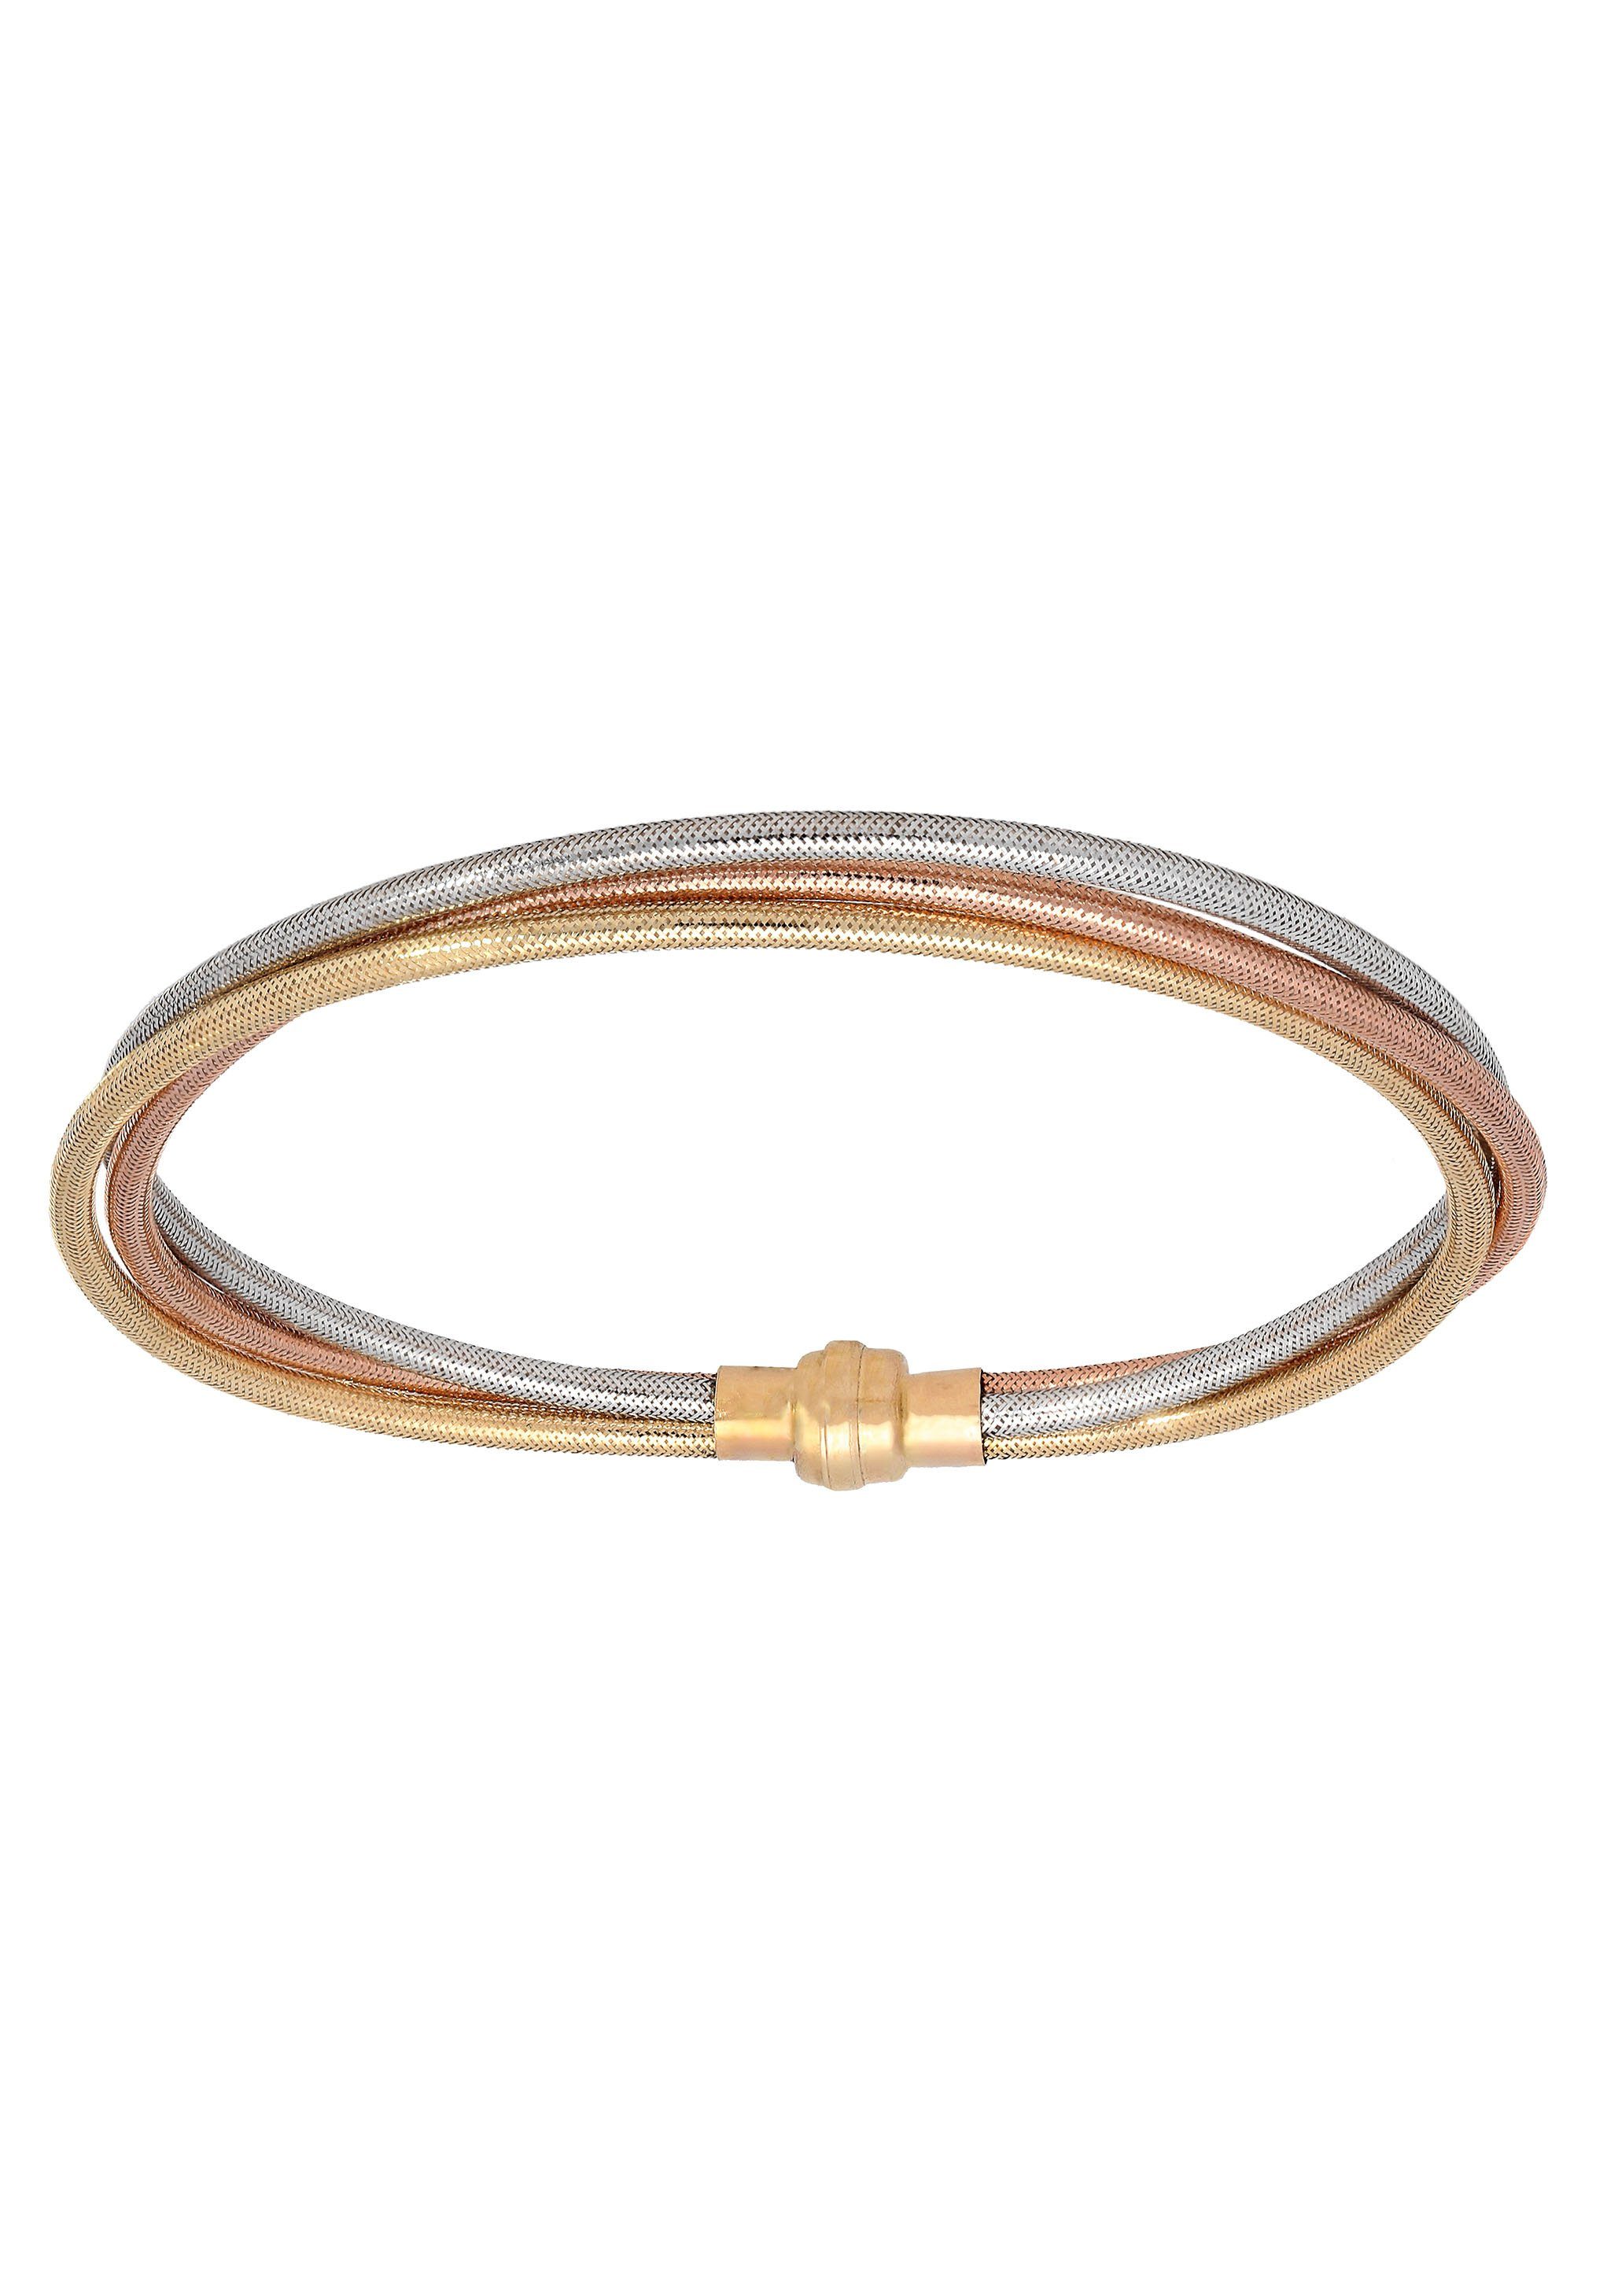 Firetti Armband Schmuck Geschenk Gold 375 Armschmuck Armkette Goldarmband, zu Kleid, Shirt, Jeans, Sneaker! Anlass Geburtstag Weihnachten